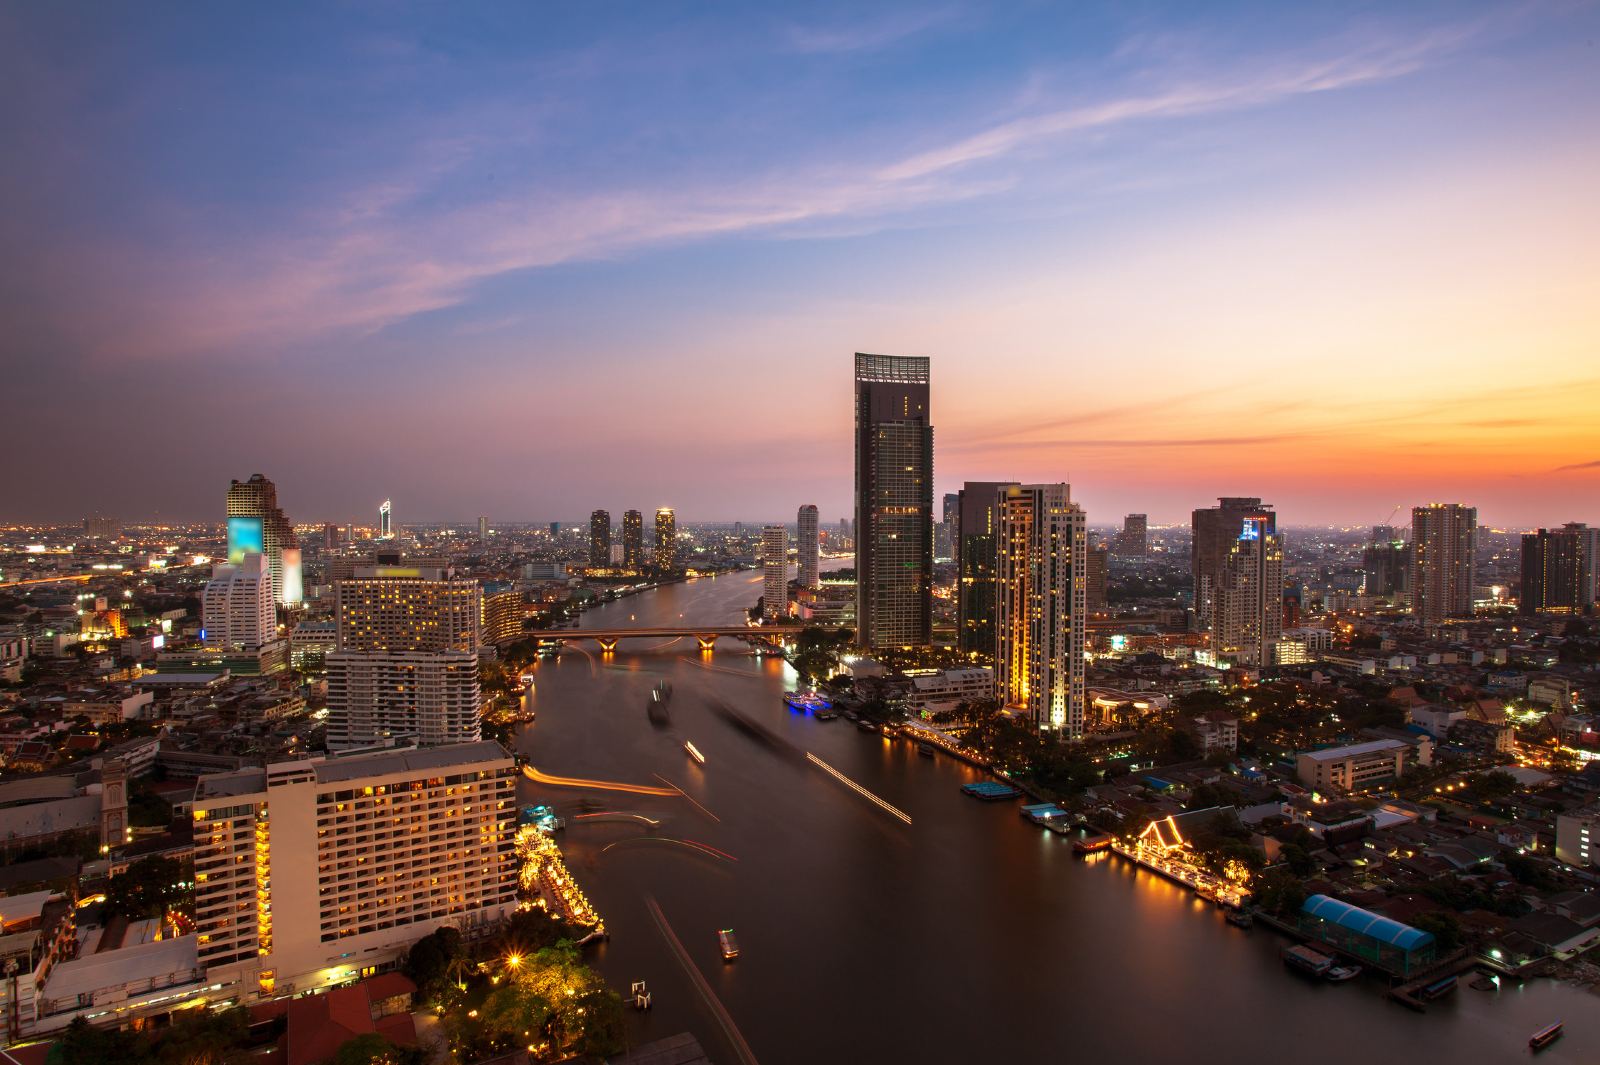 泰国曼谷 昭拍耶河 แม่น้ำเจ้าพระยา